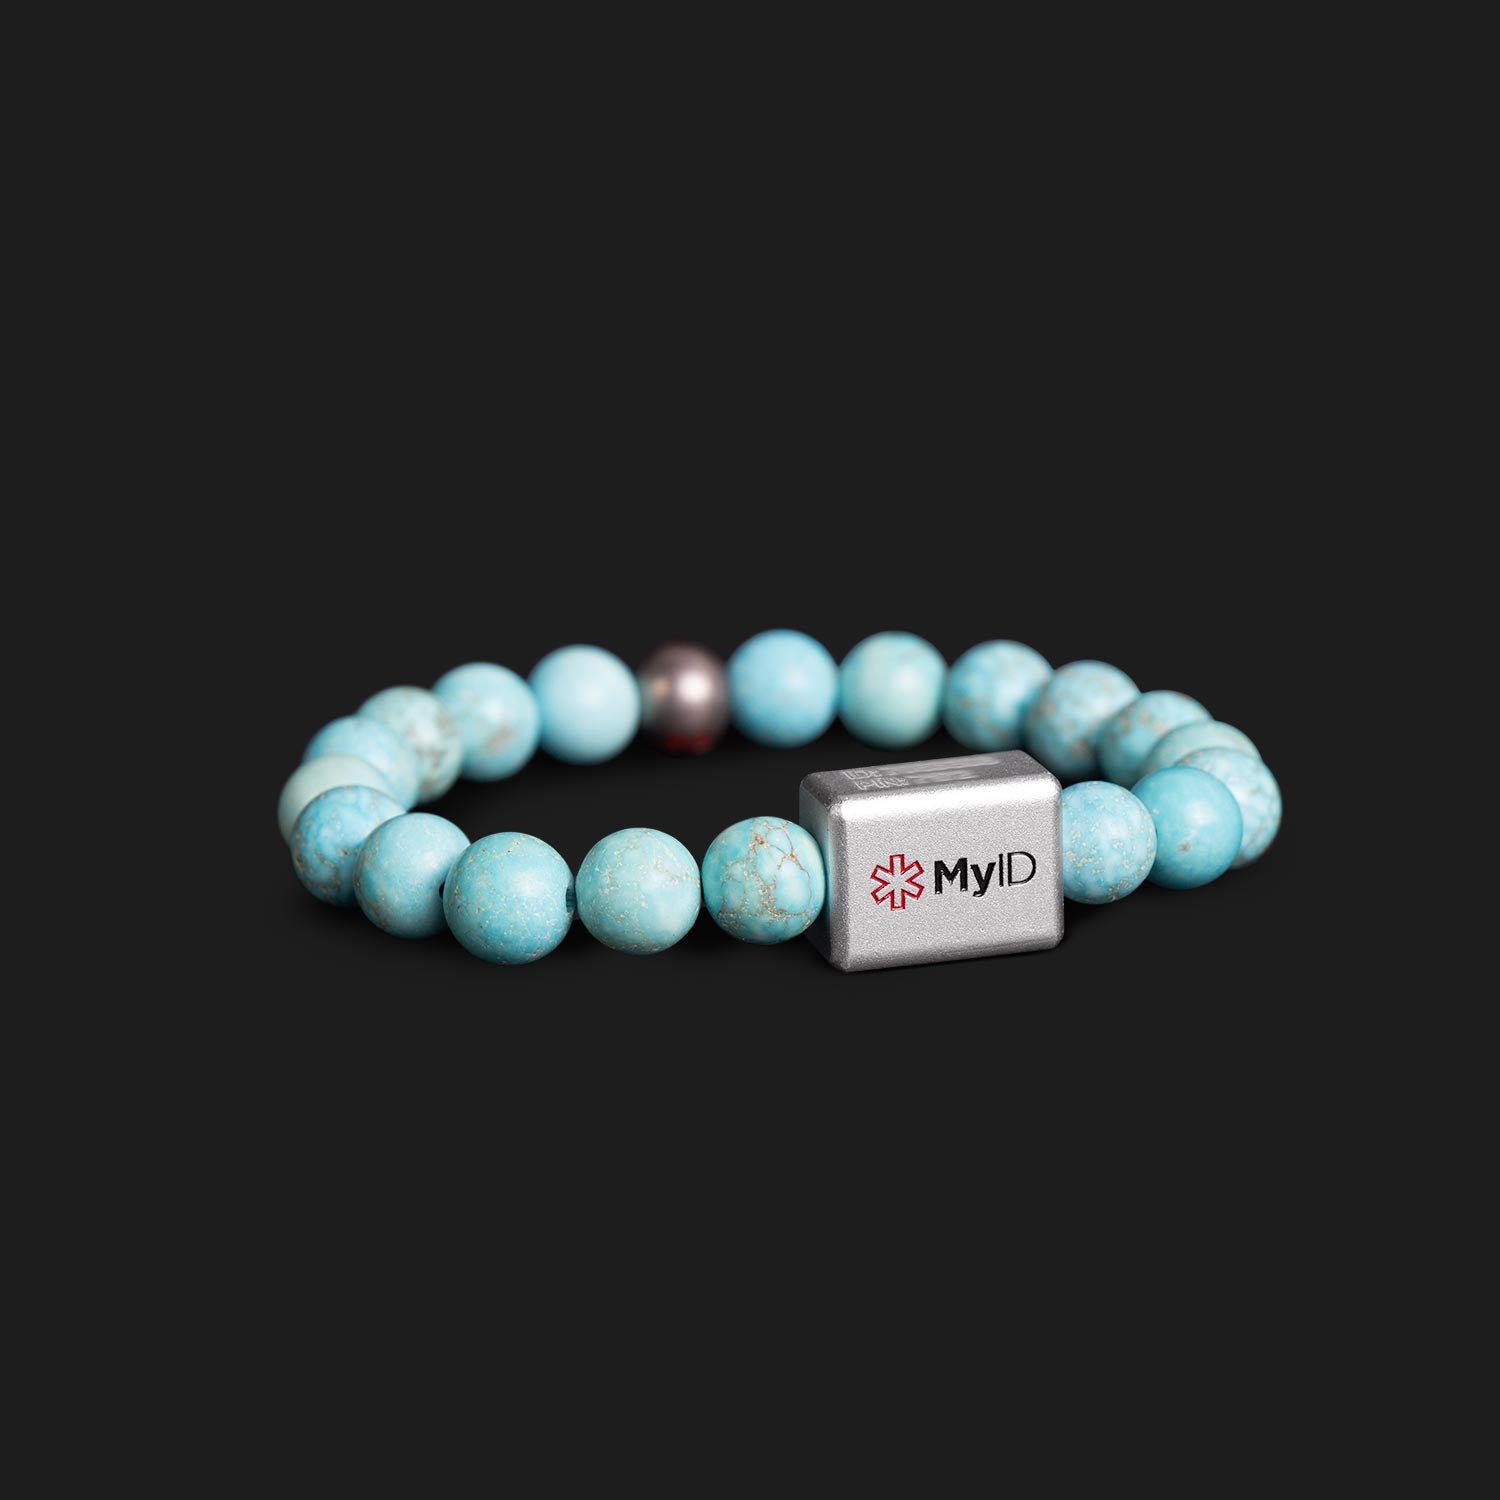 Turquoise Stone Medical ID Bracelet